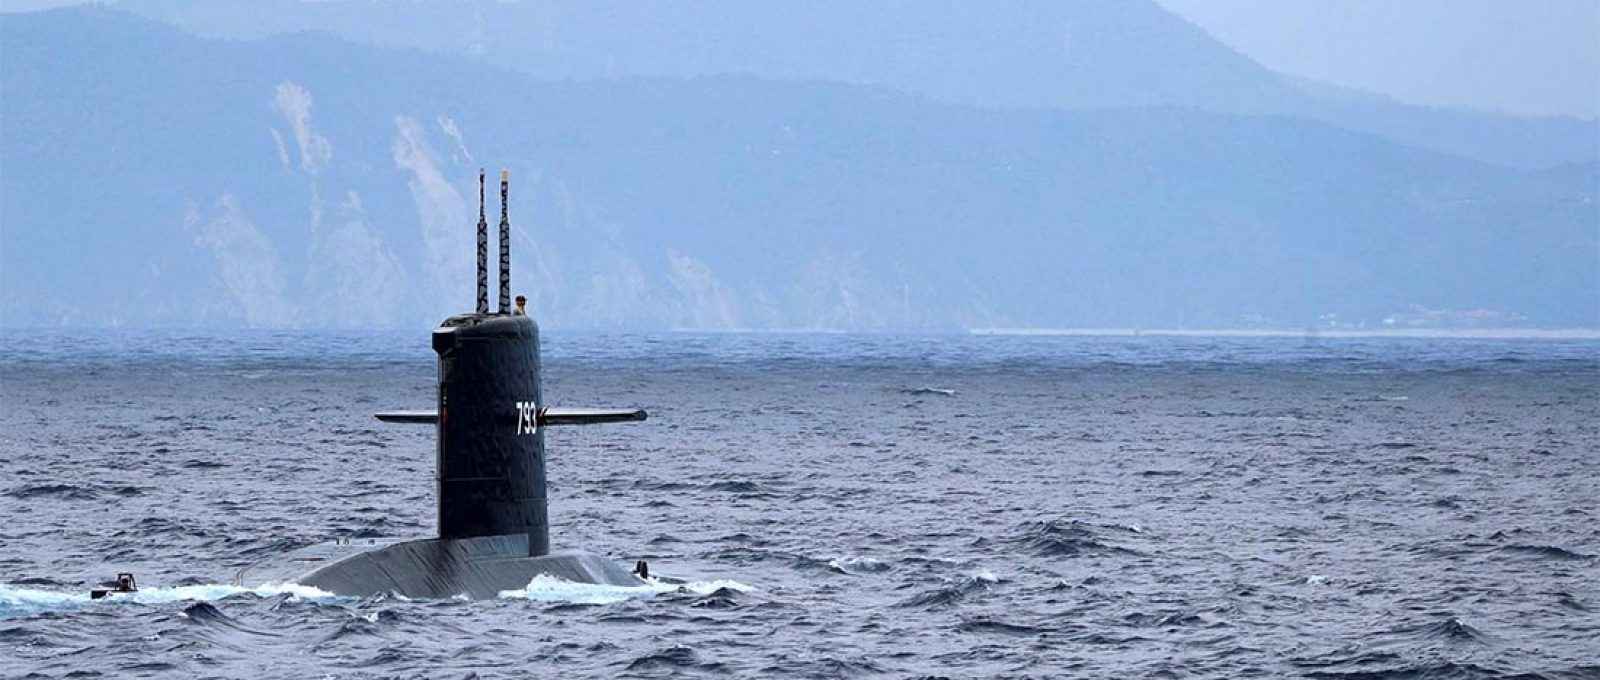 Submarino diesel-elétrico Hai Lung SS-793 durante um exercício próximo à base naval de Yilan, em Taiwan, 13 de abril de 2018 (Foto: Tyrone Siu/Reuters).